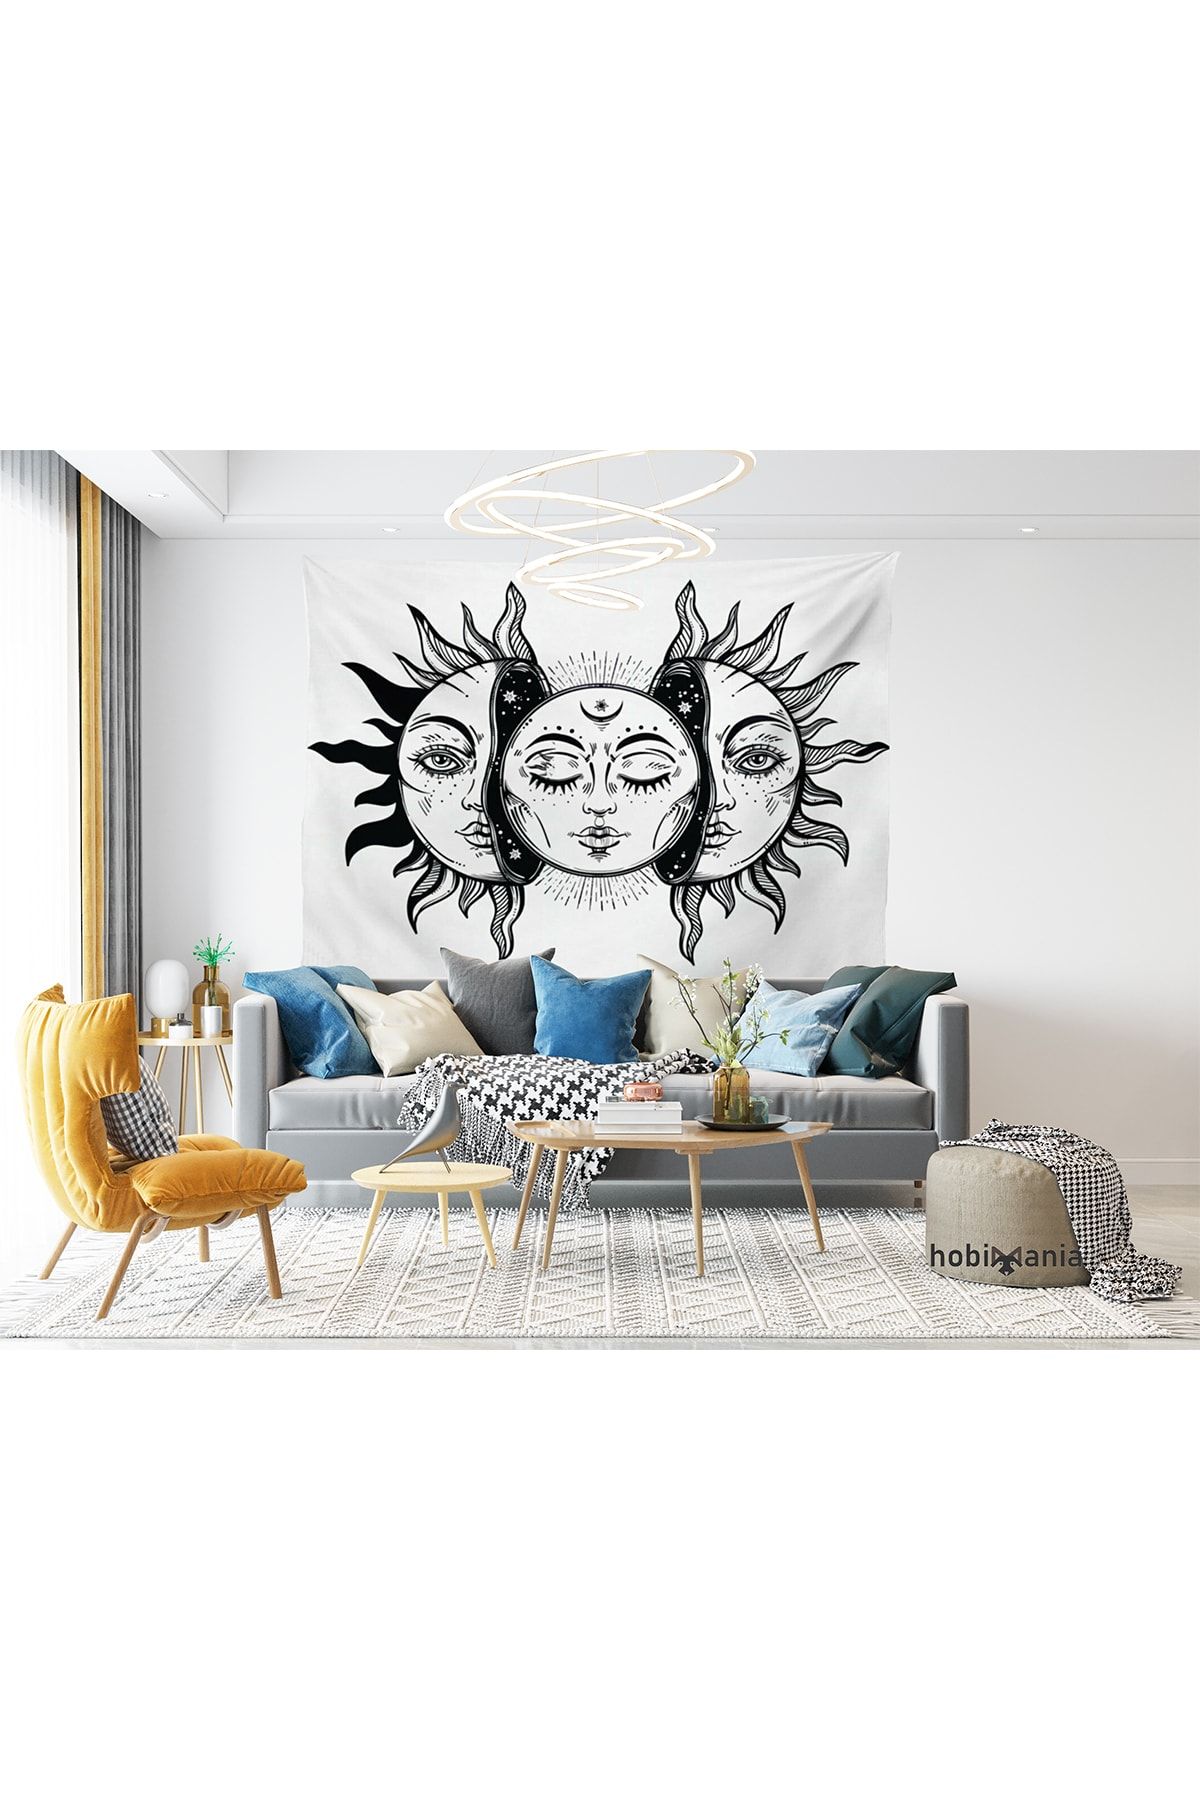 Hobimania Mandala Hint Güneş Siyah Beyaz Duvar Örtüsü 150x100 Cm Duvar Dekorasyon Moda